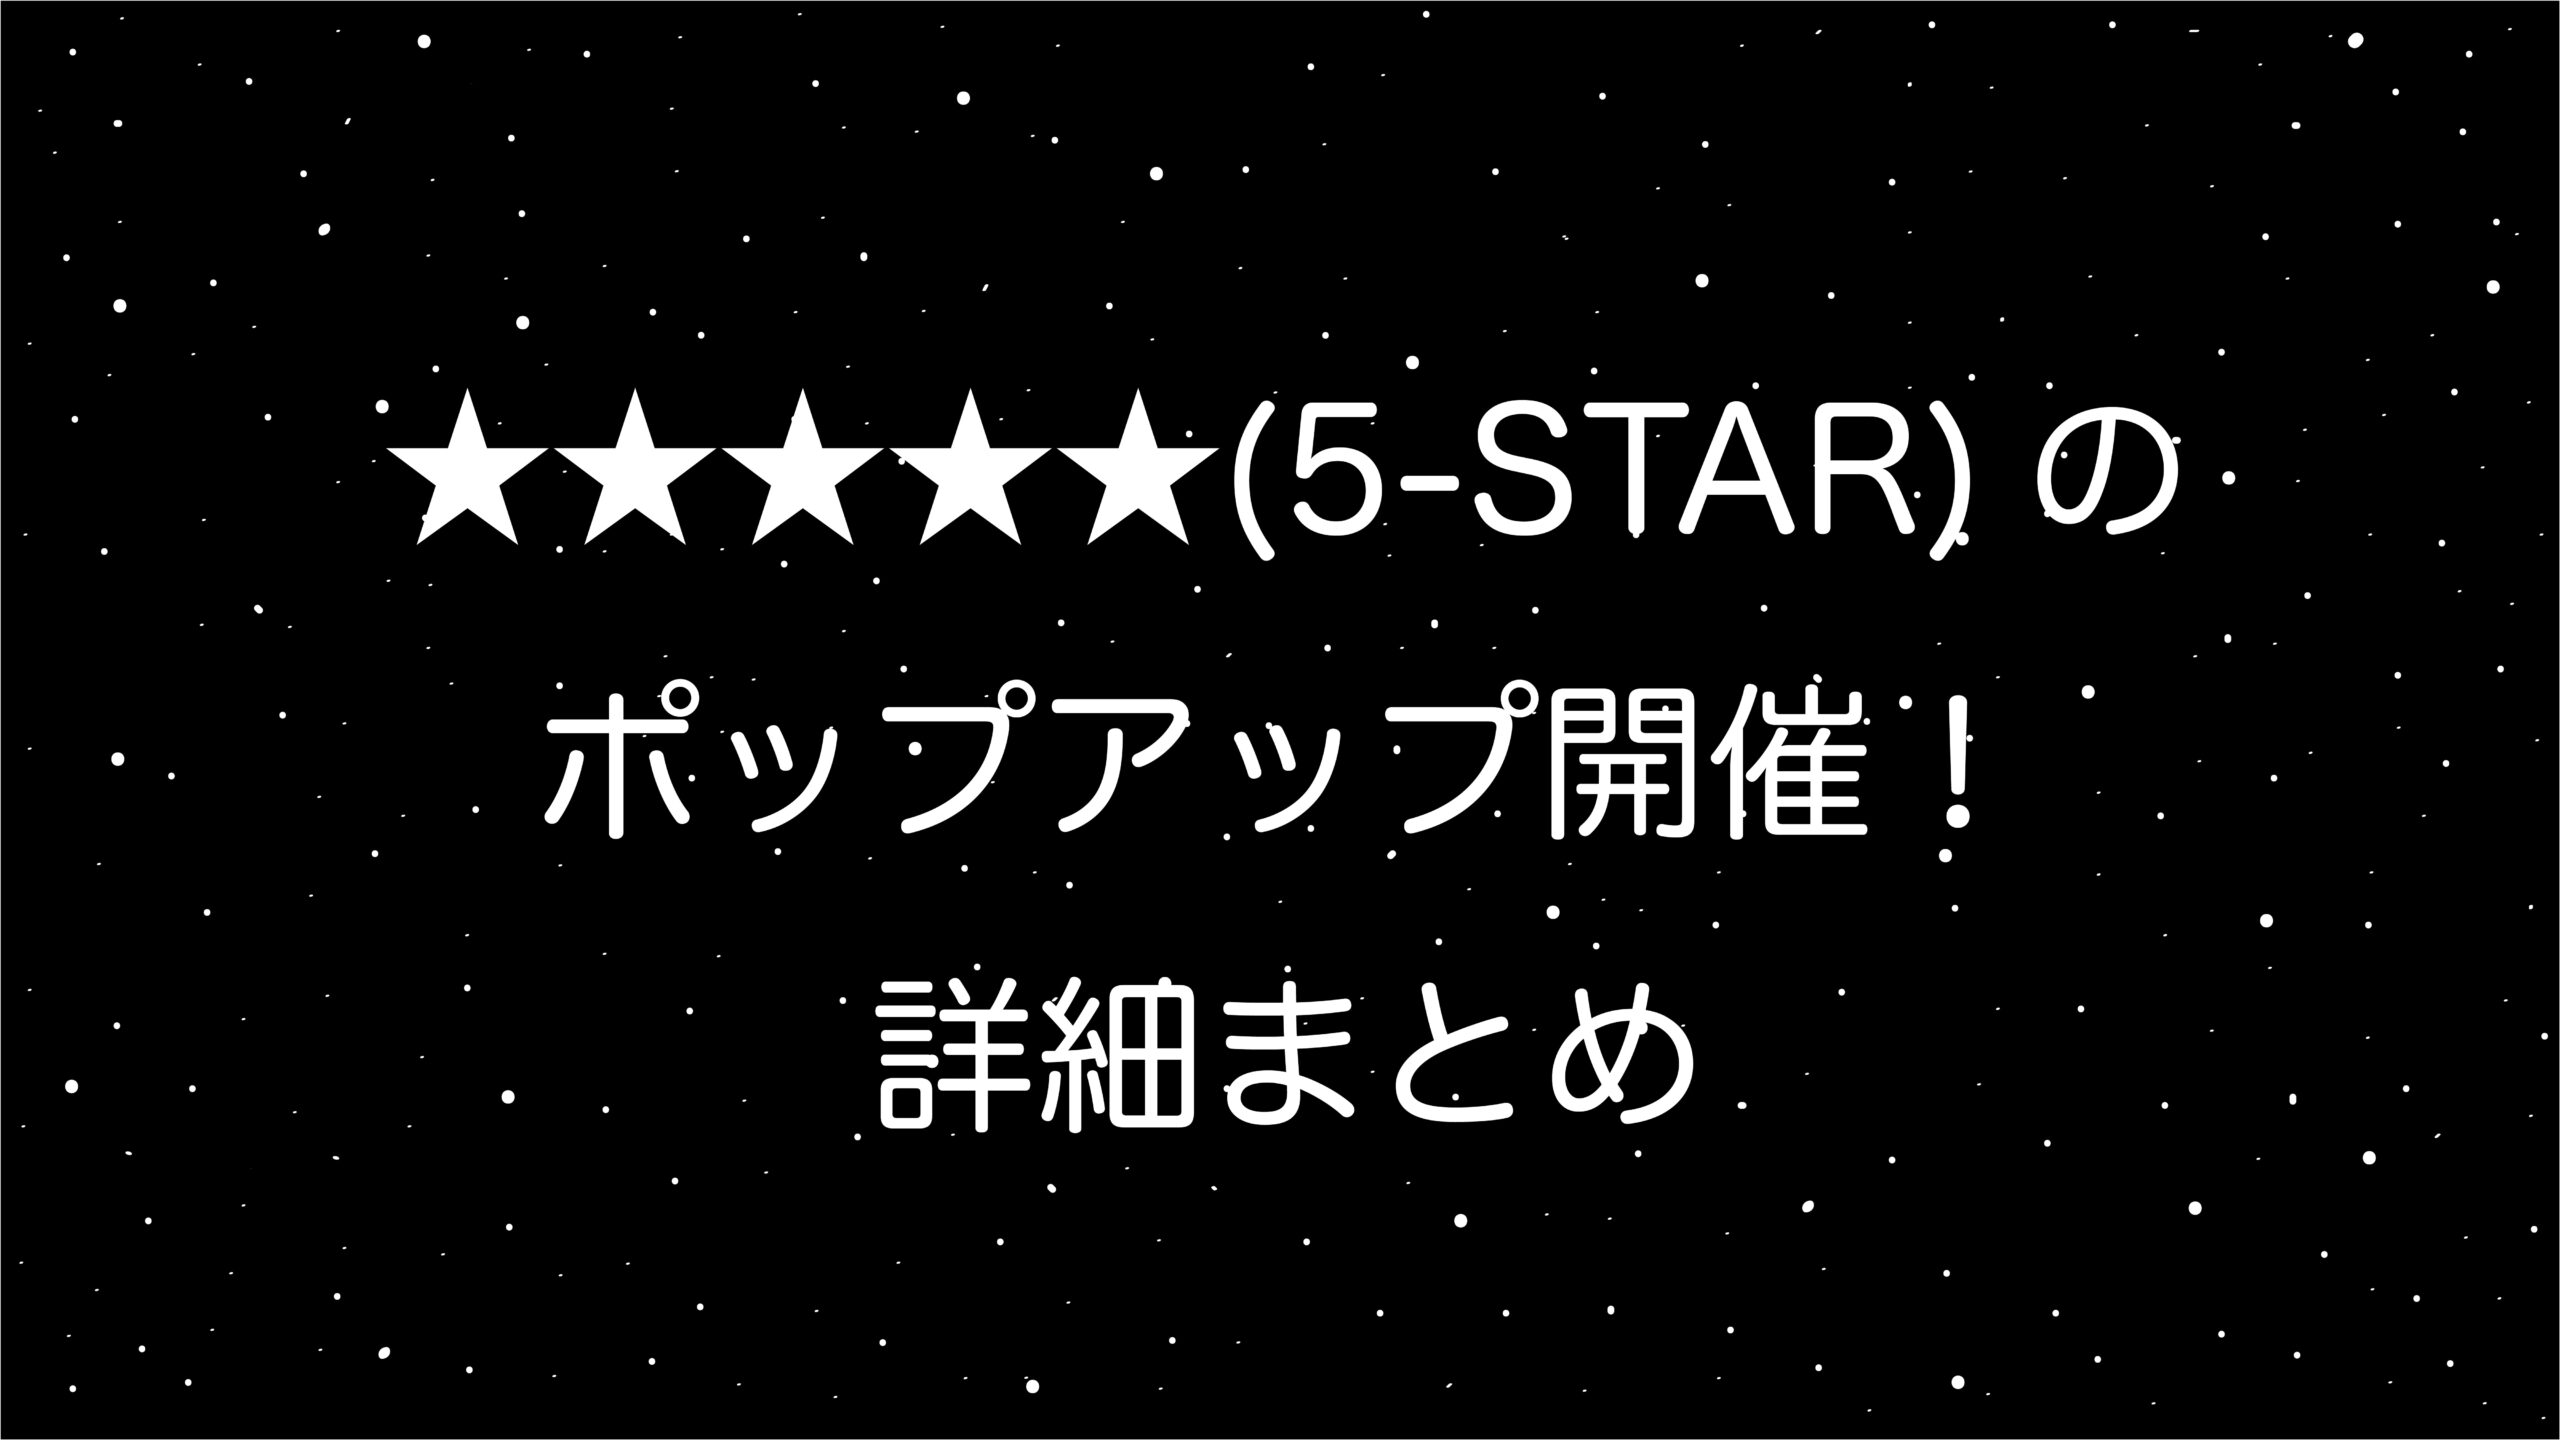 Stray Kids＜5 STAR＞ポップアップSKZ POP UP開催！詳細まとめ